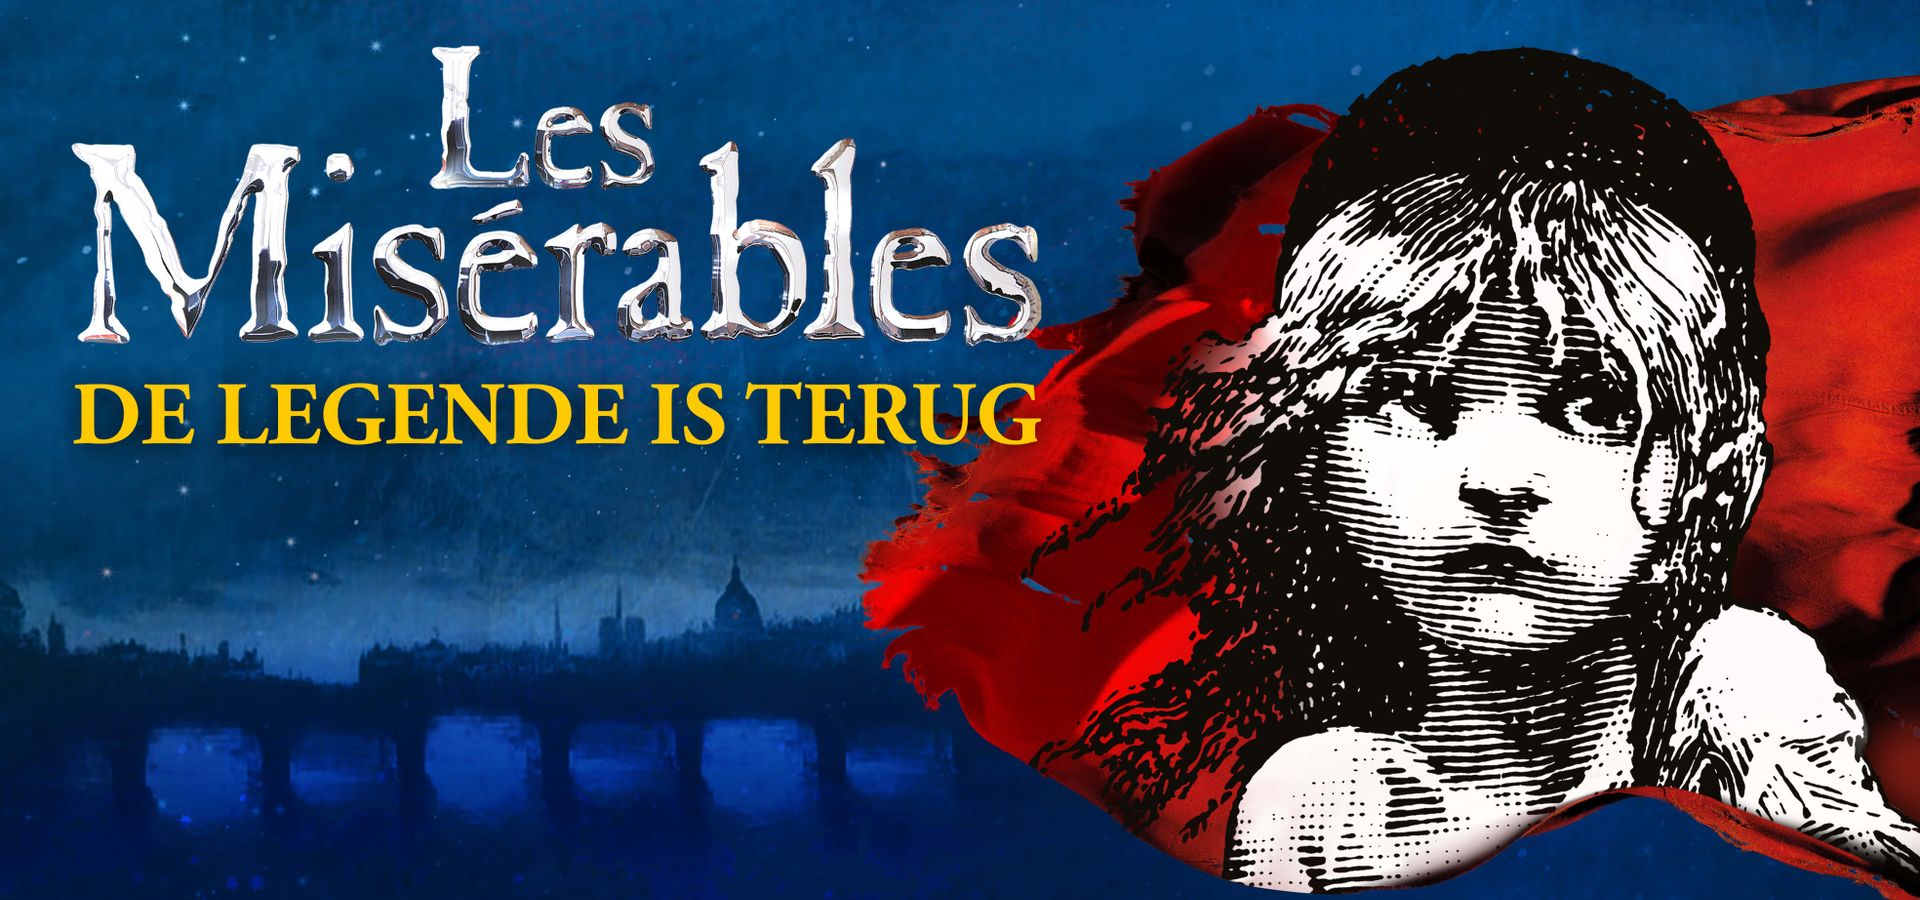 Les Misérables - Chassé Theater Breda